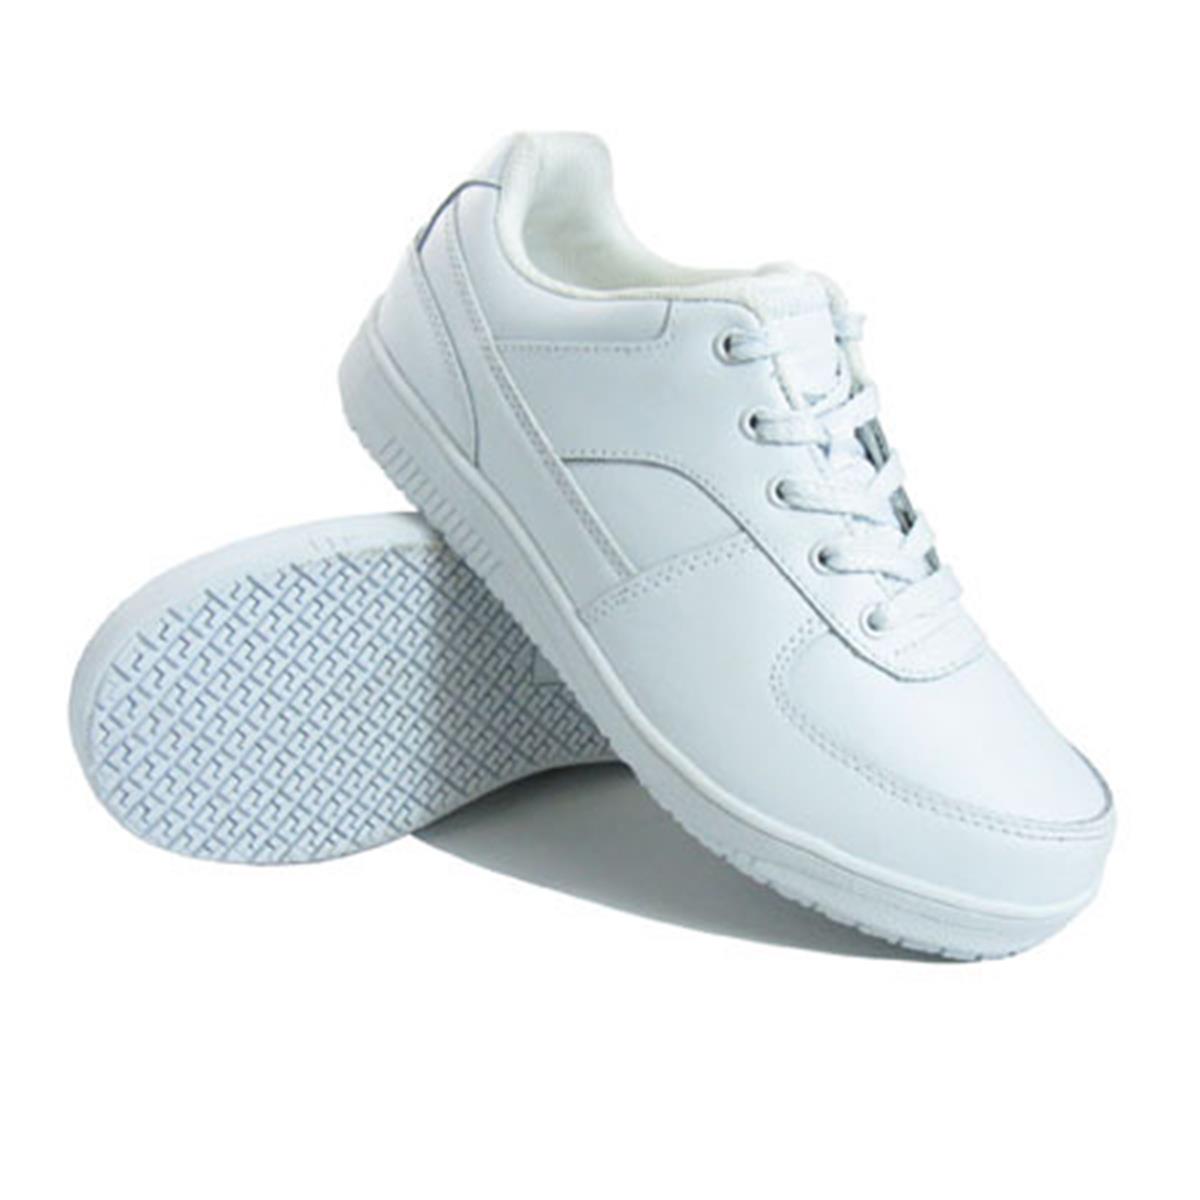 Genuine Grip Footwear- 215 White Sport Classic Women's Shoe